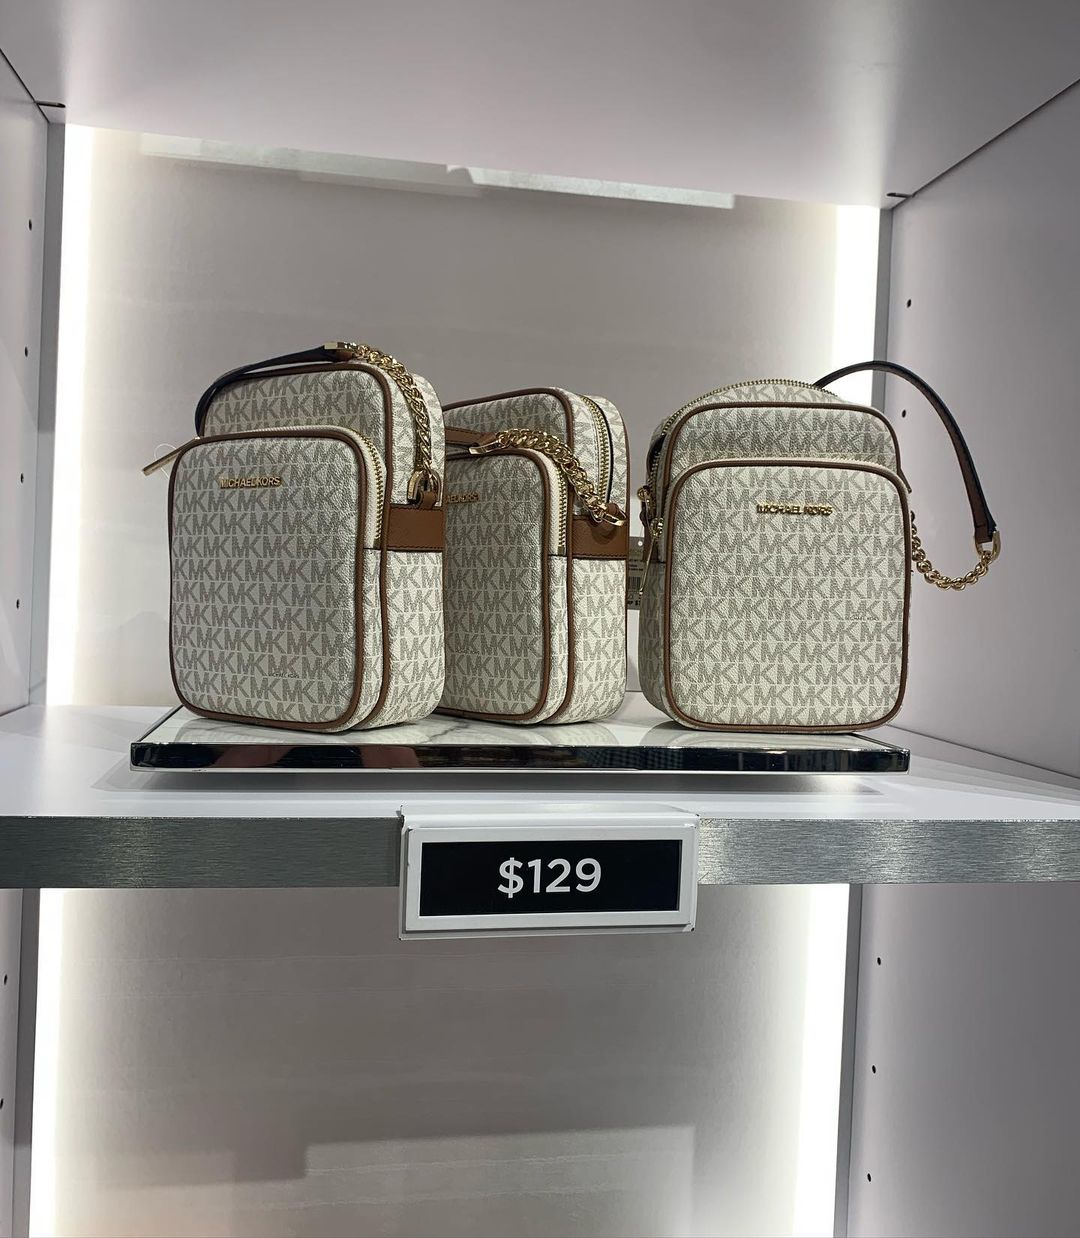 Michael Kors Outlet – Geschäft für Taschen und Accessoires in den Orlando Premium Outlets